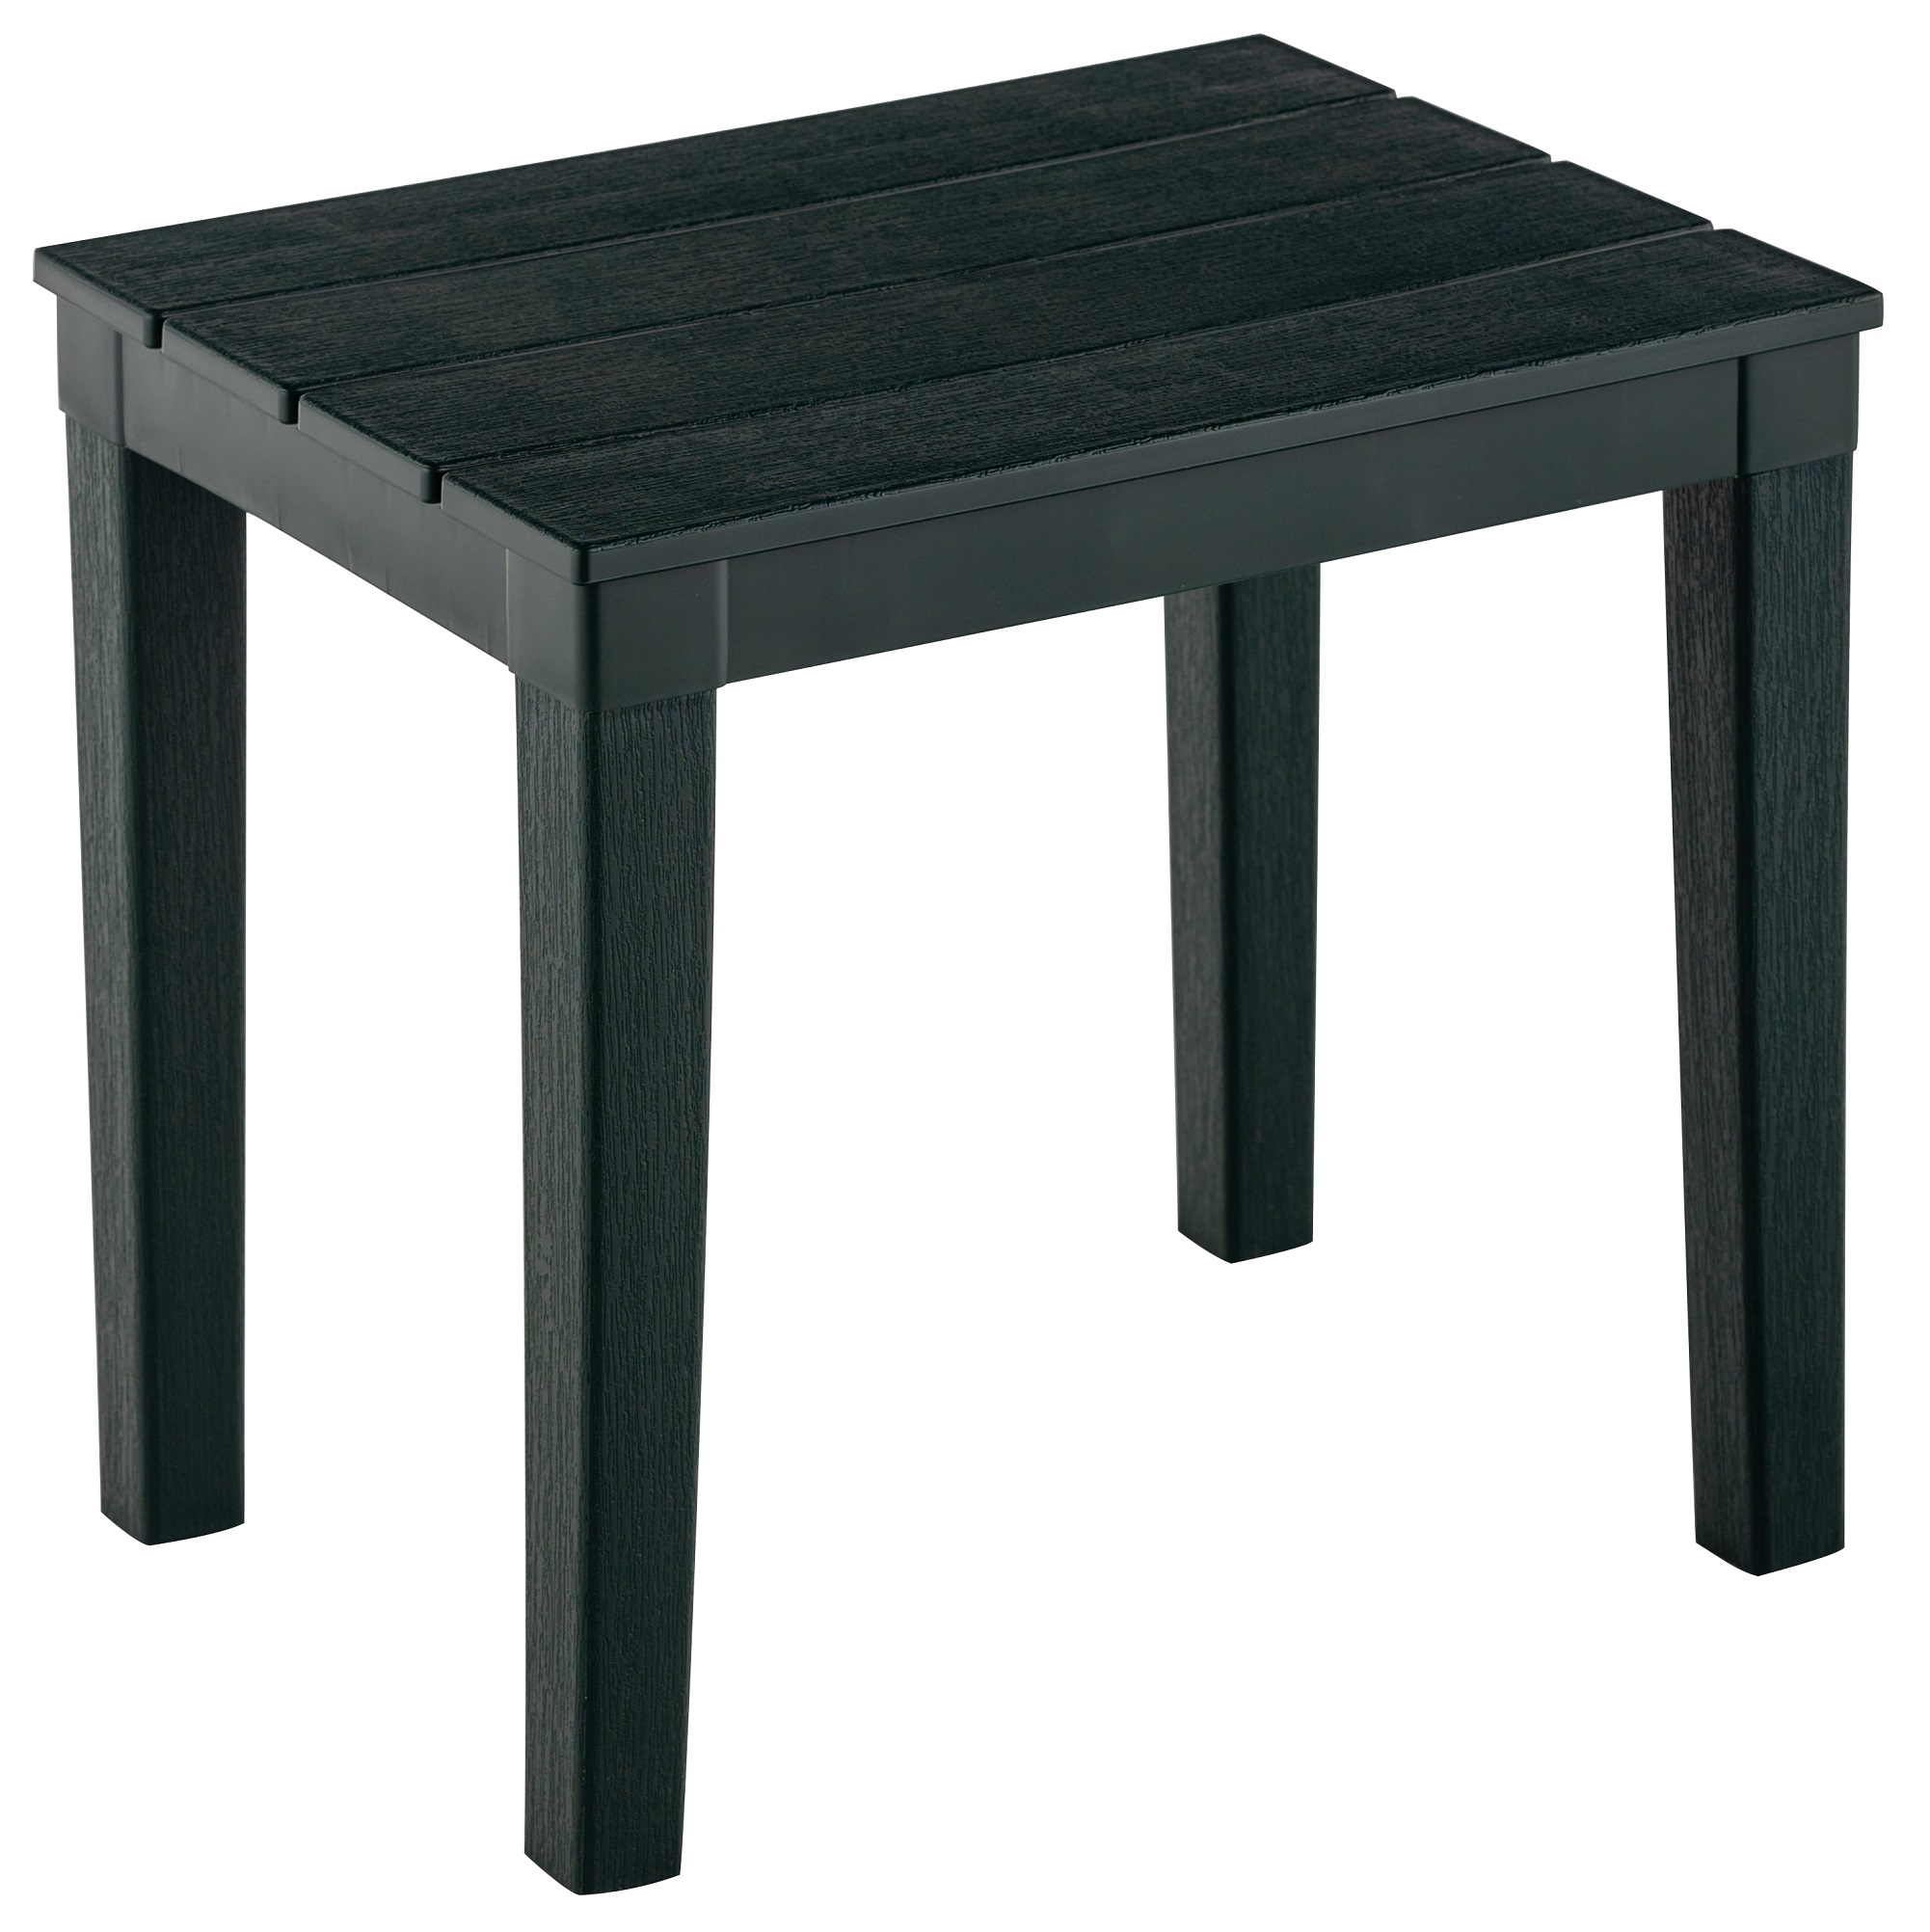 стол прямоугольный элластикпласт прованс 80 140см бежевый Столик для шезлонга ЭлластикПласт Прованс 40*30см, тёмно-зелёный